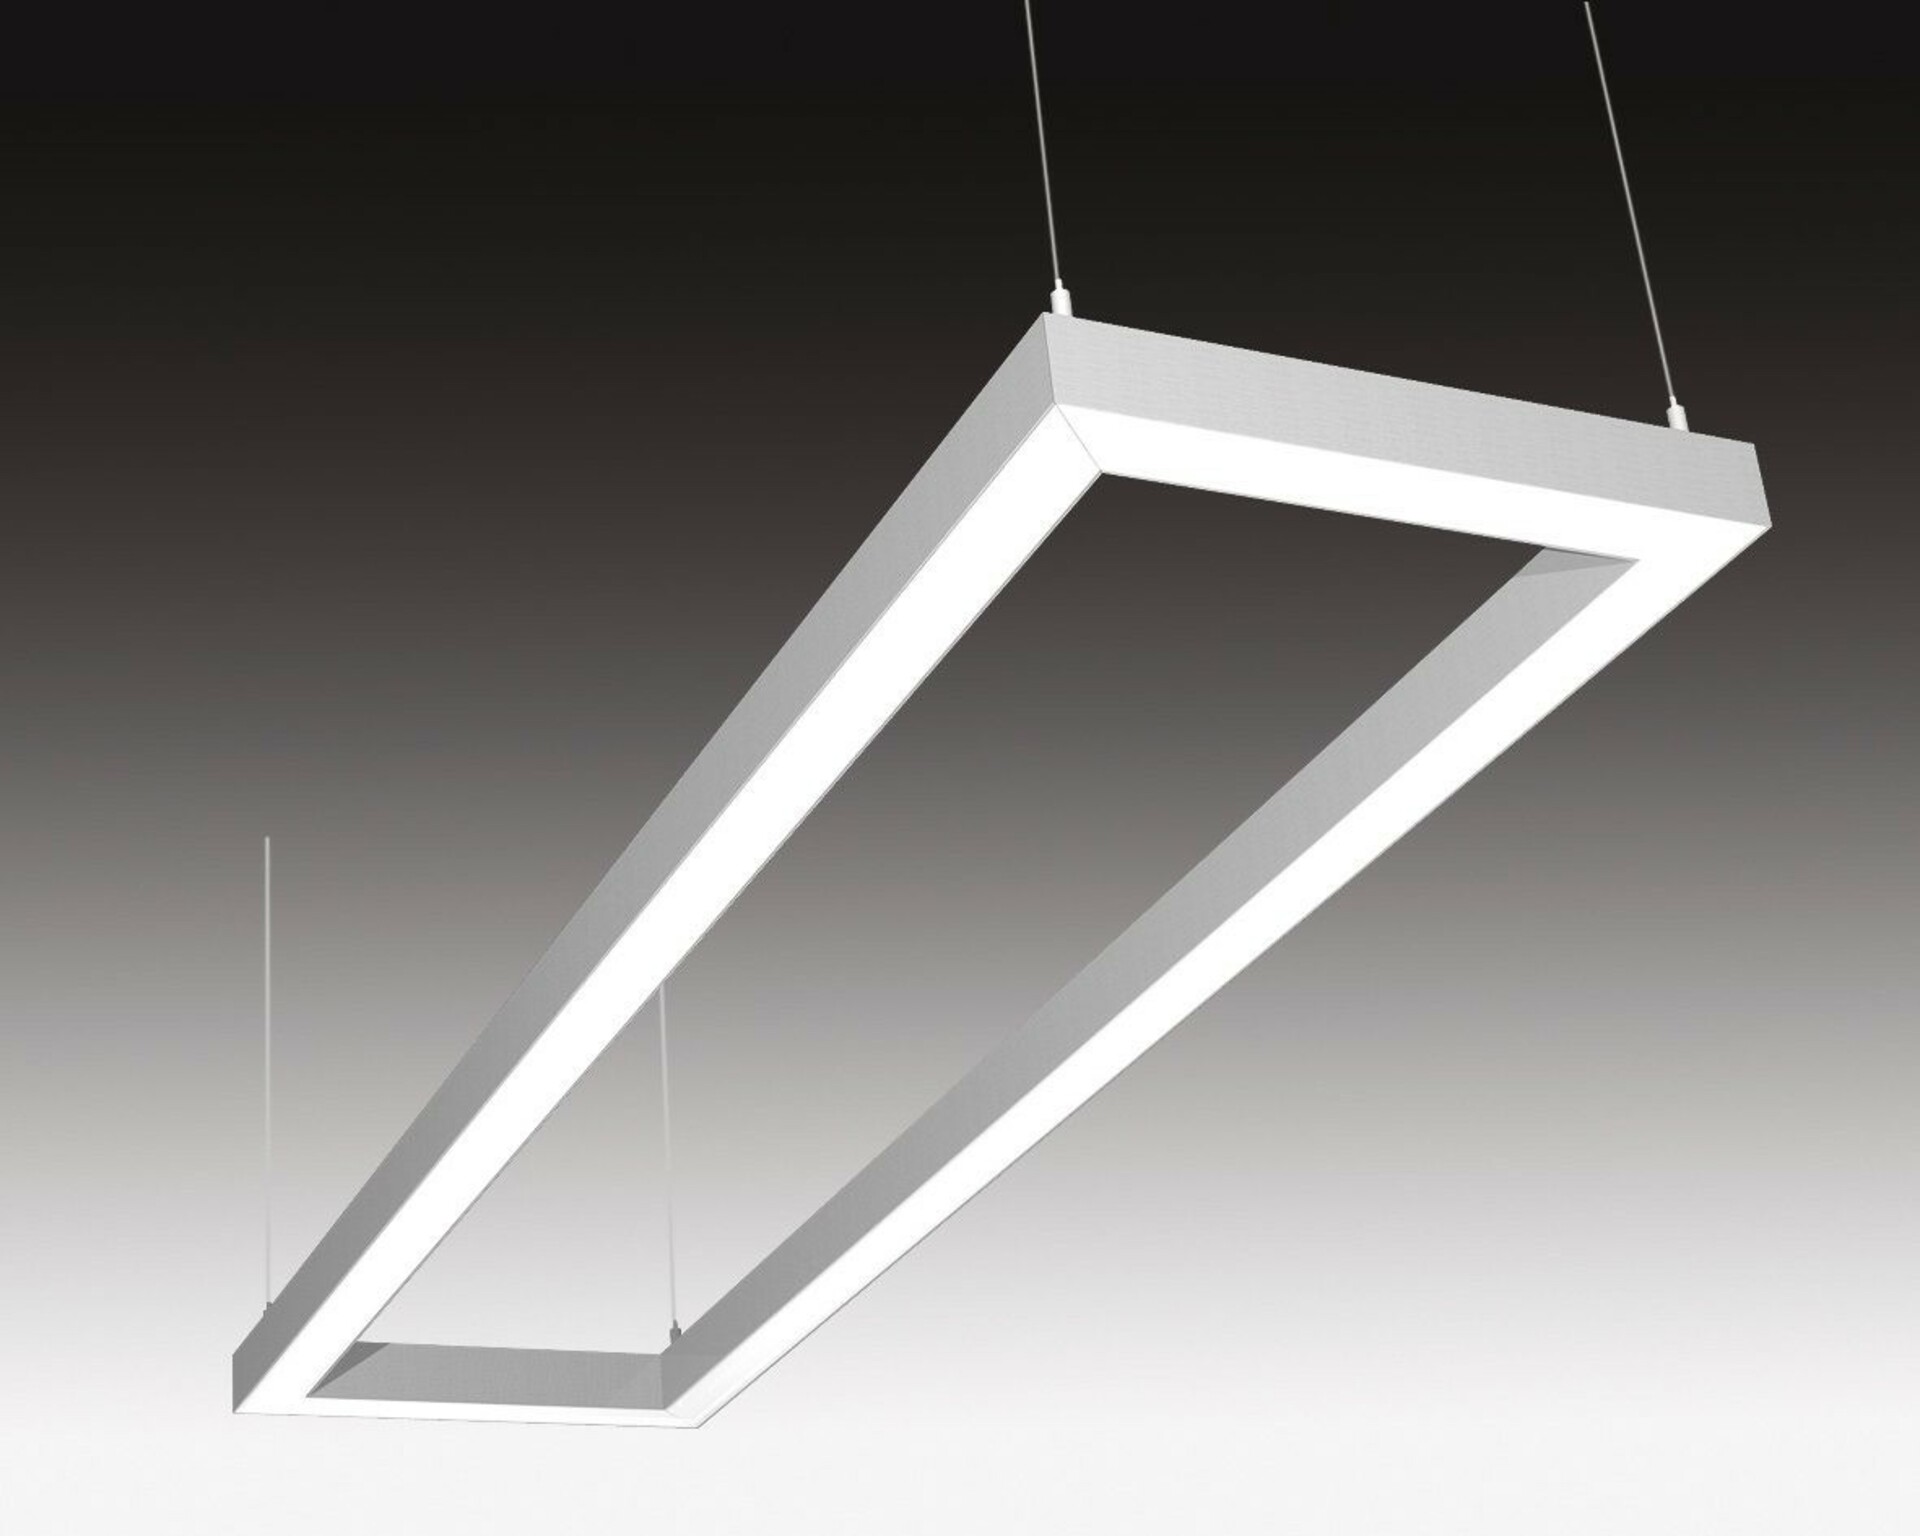 SEC Stropní nebo závěsné LED svítidlo s přímým osvětlením WEGA-FRAME2-DA-DIM-DALI, 72 W, eloxovaný AL, 1165 x 330 x 50 mm, 4000 K, 9500 lm 322-B-110-01-00-SP